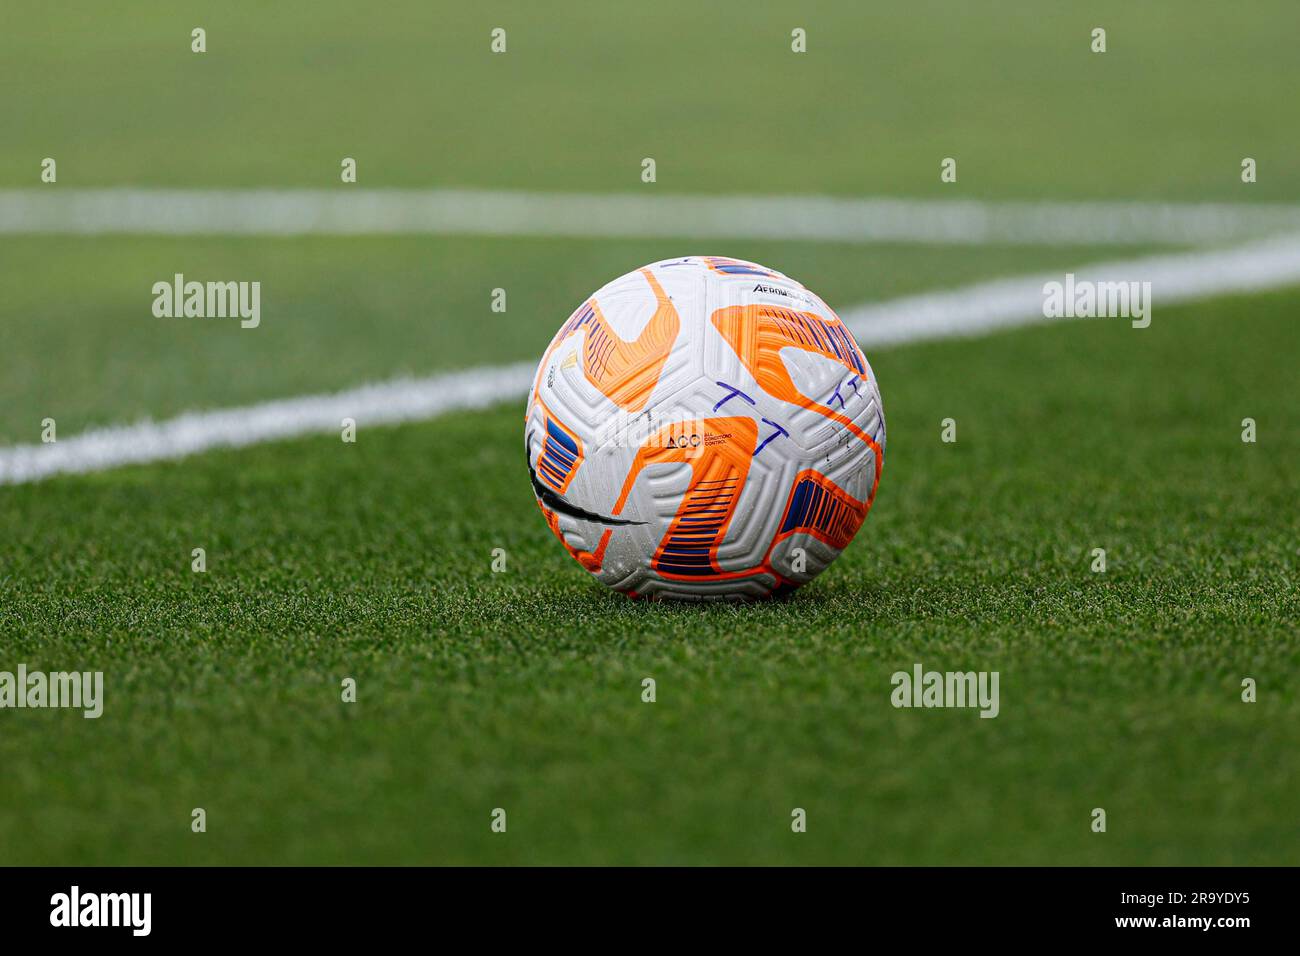 St. Louis, Missouri. USA; Une vue générale de l'une des balles officielles de football lors d'un match de la coupe d'or de la CONCACAF entre la Jamaïque et Trinité-et-Tobago le mer Banque D'Images